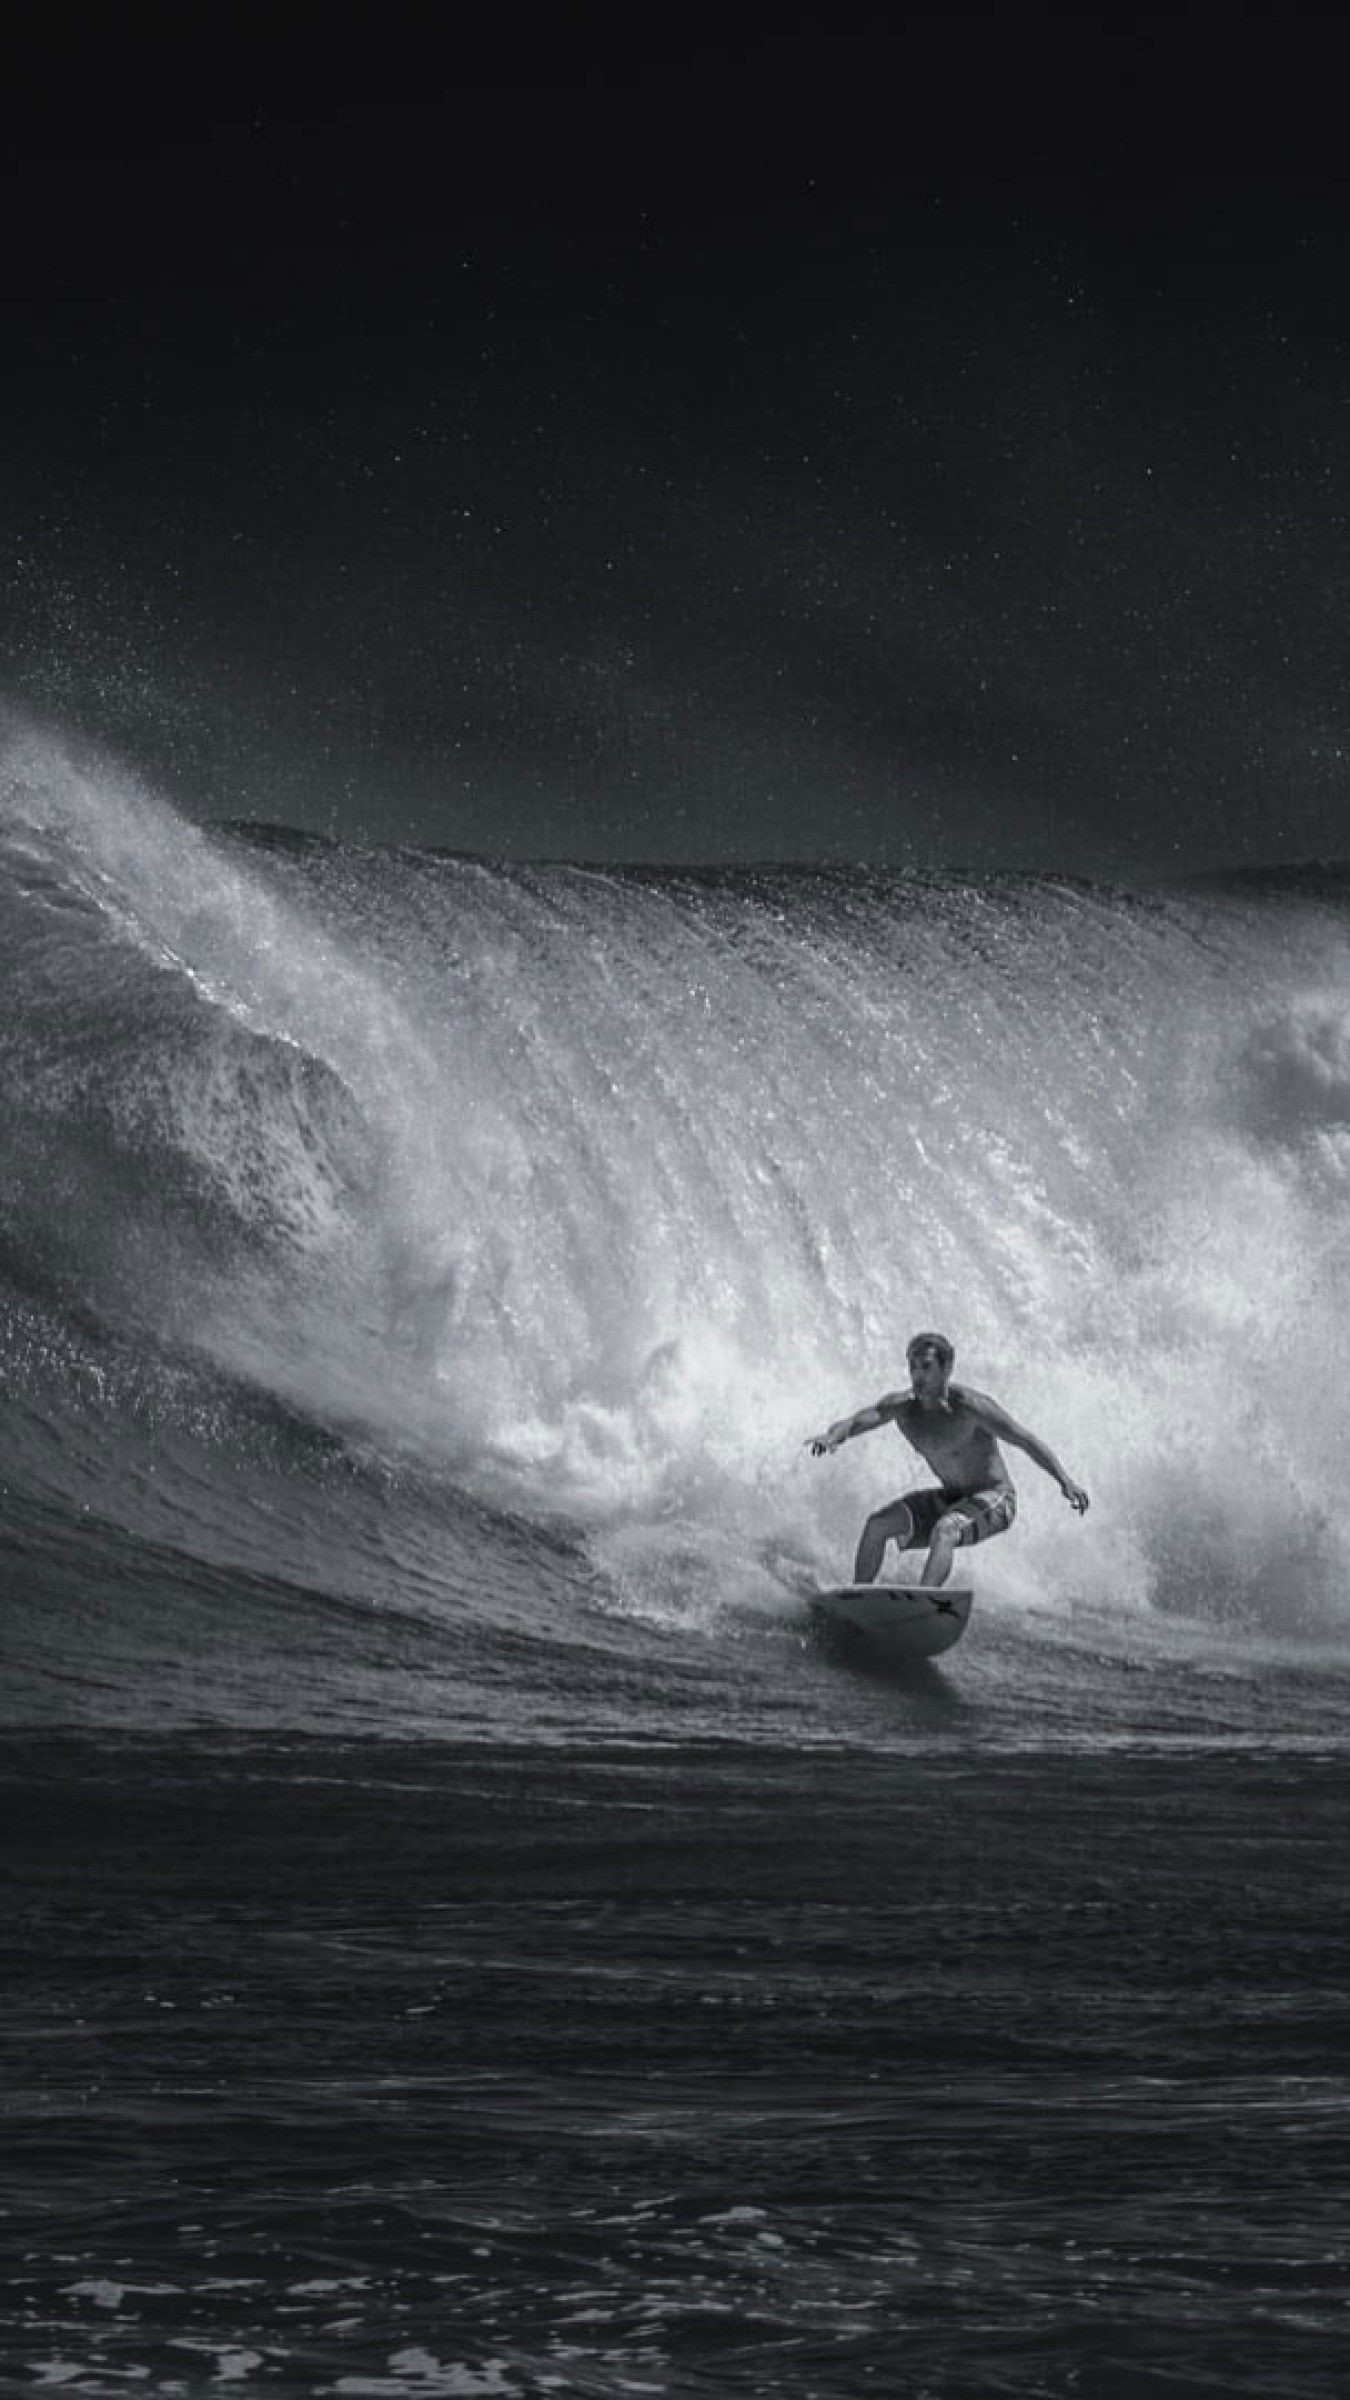 Surfing: Monochrome water surfer, Longboarding in the ocean, Extreme sport. 1350x2400 HD Wallpaper.